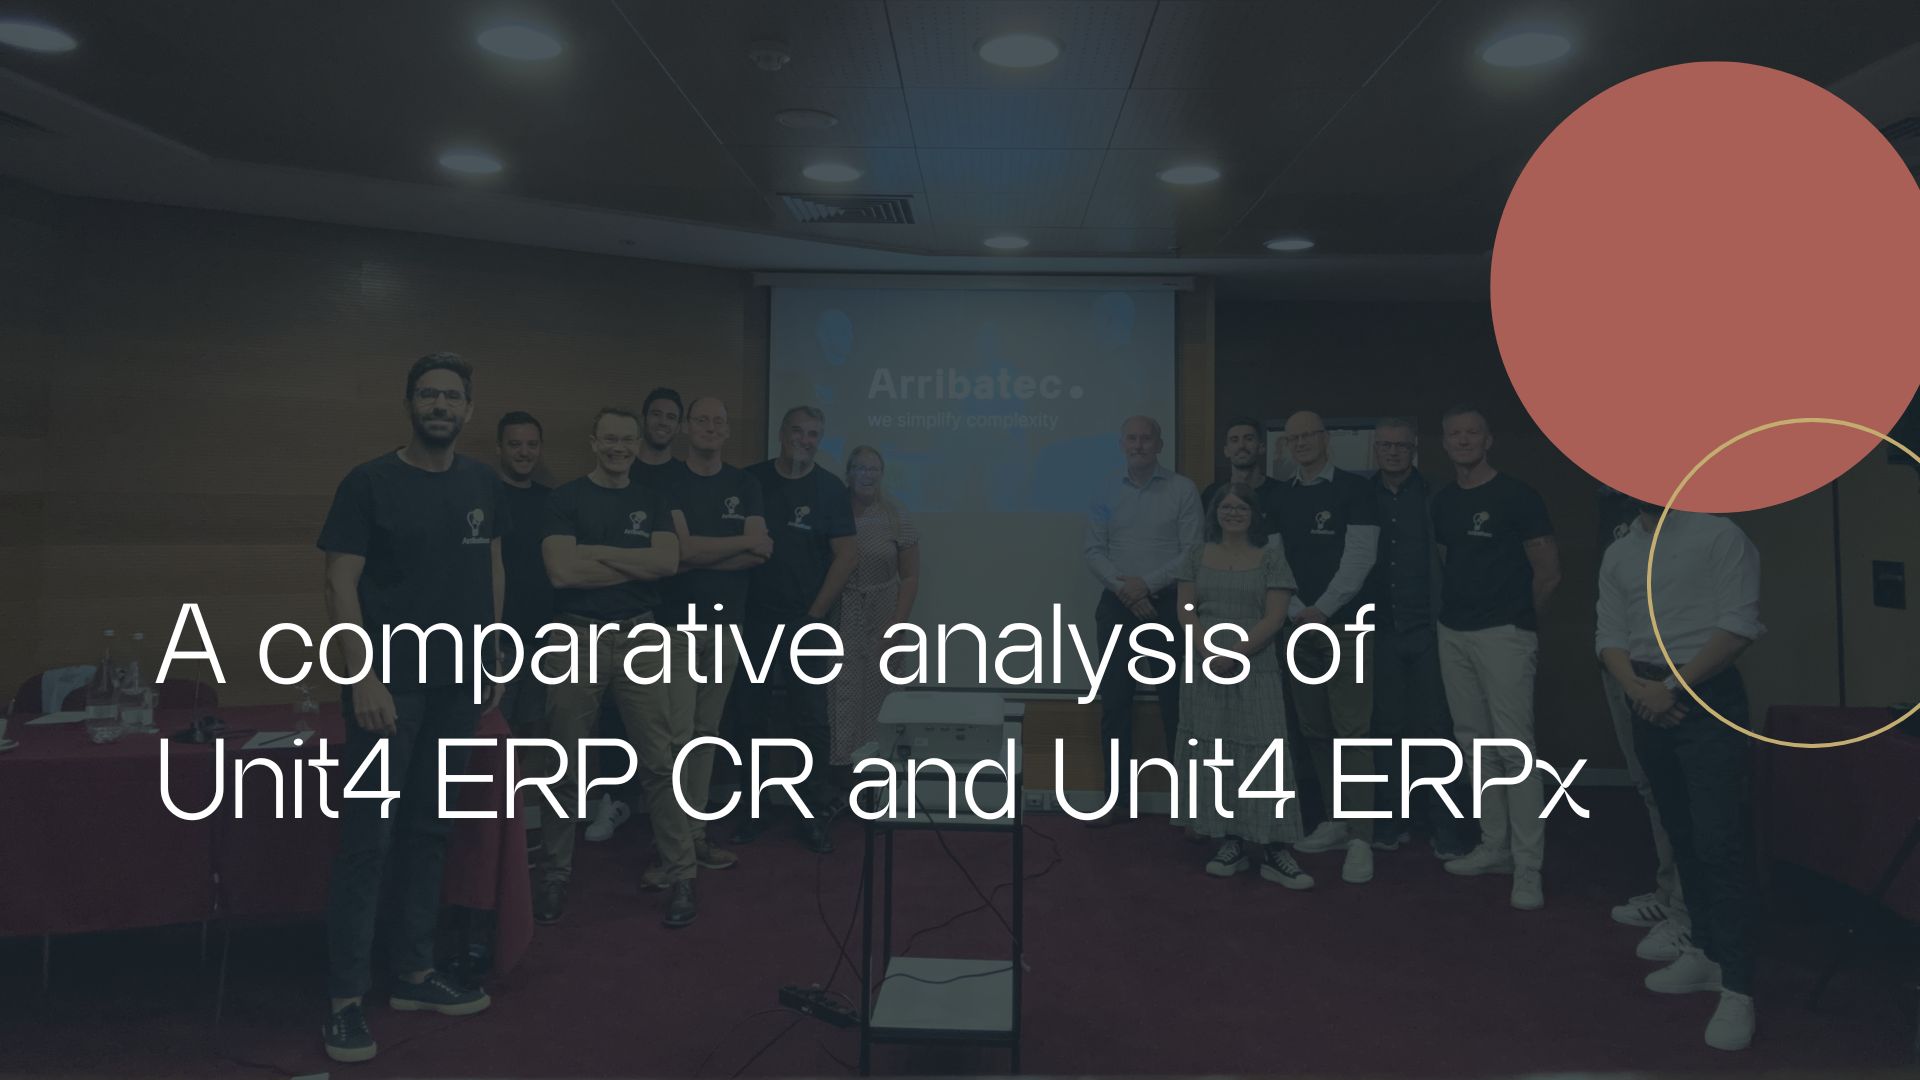 Unit4 ERP CR comparison analysis